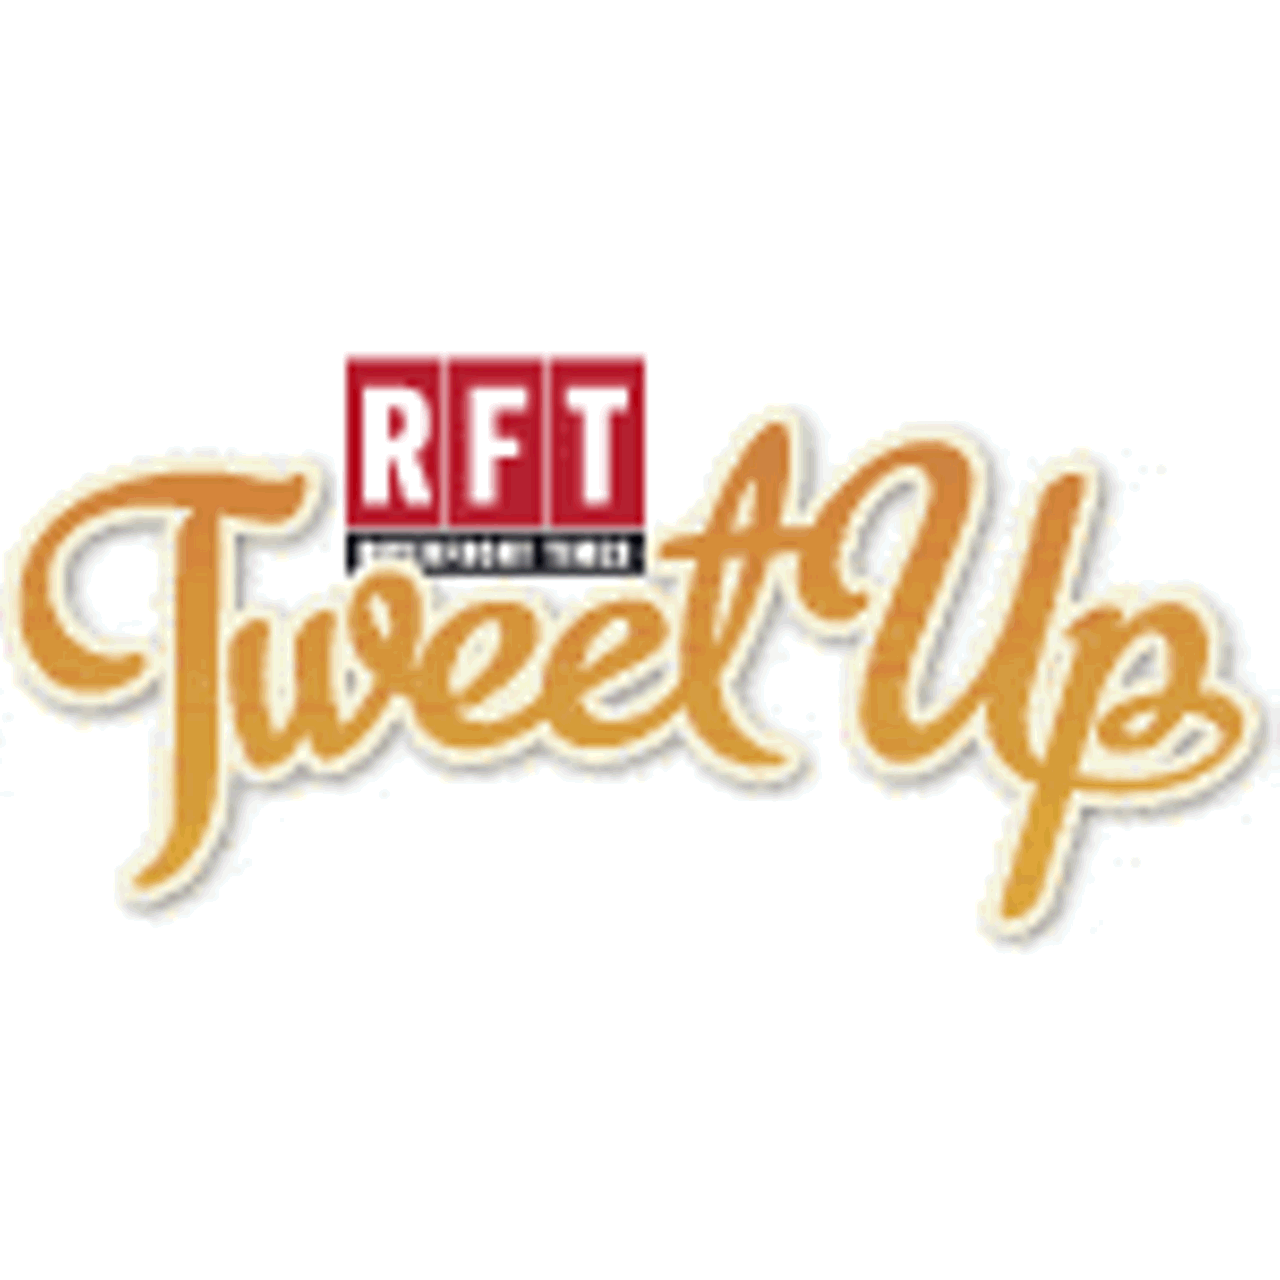 RFT Tweet Up